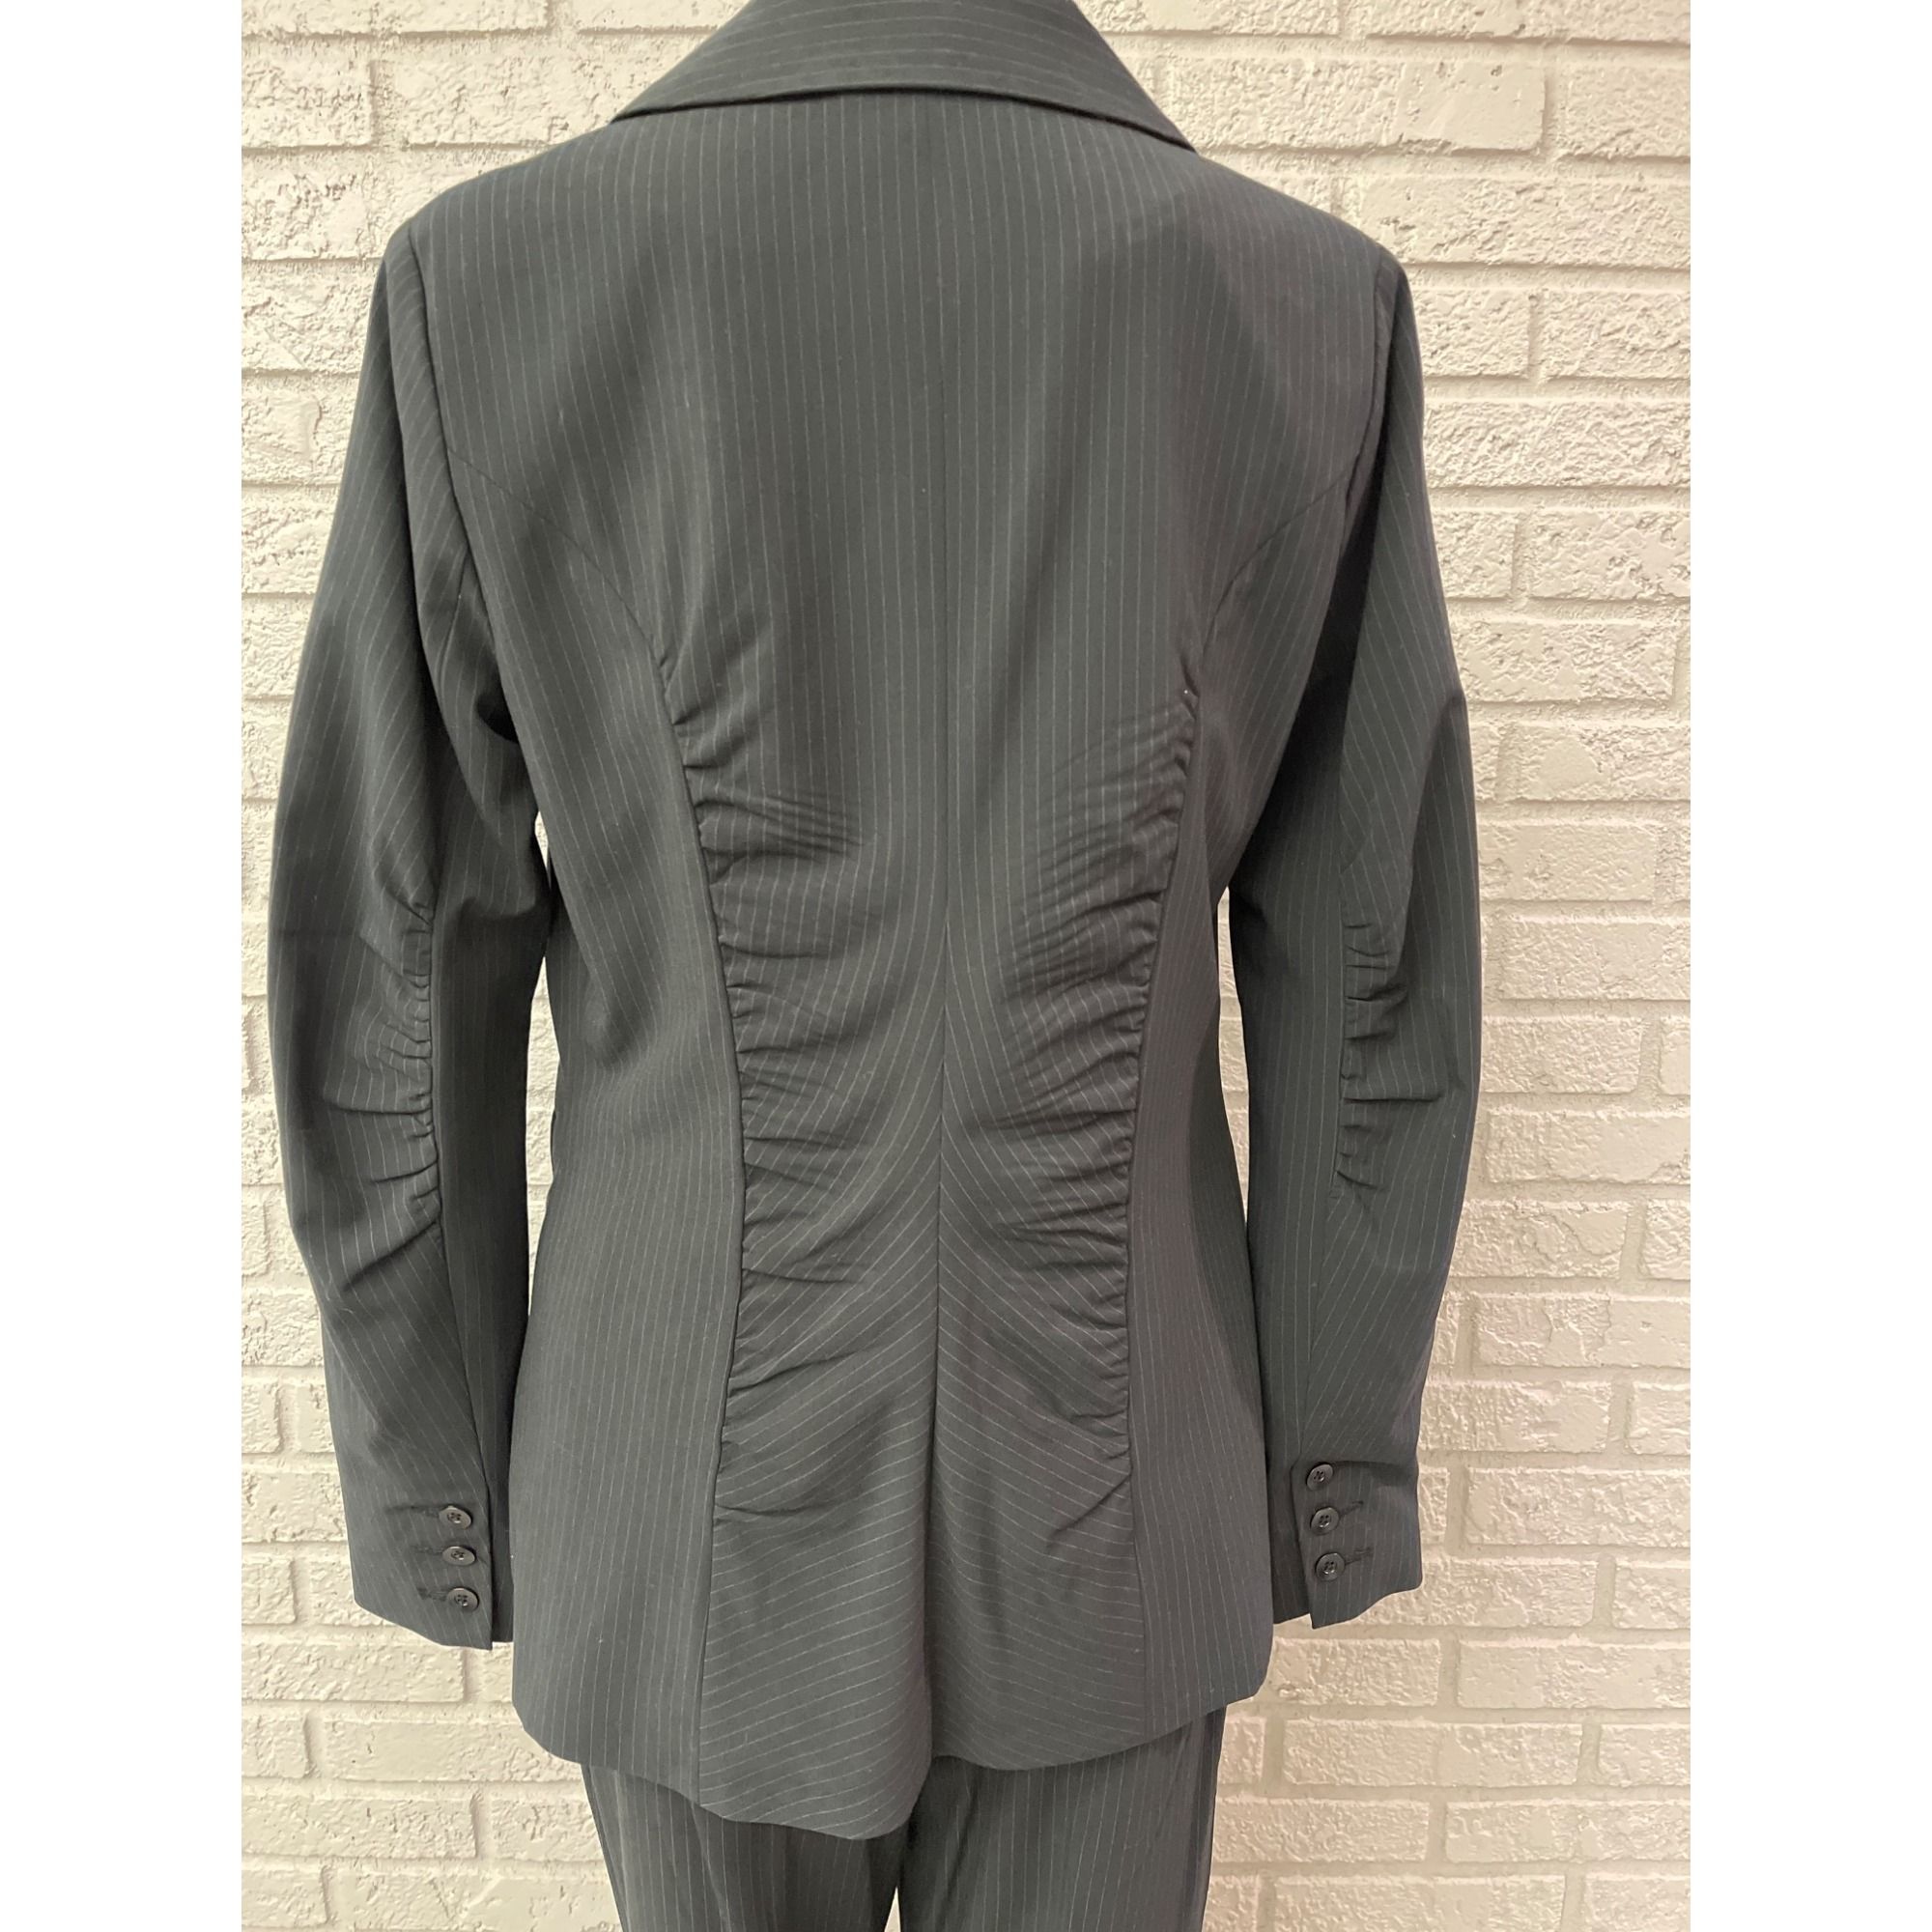 Other Cabi Black Pin Striped Pant 2 Pcs Suit Set Jacket 4 Pant 6 Size S / US 4 / IT 40 - 6 Thumbnail